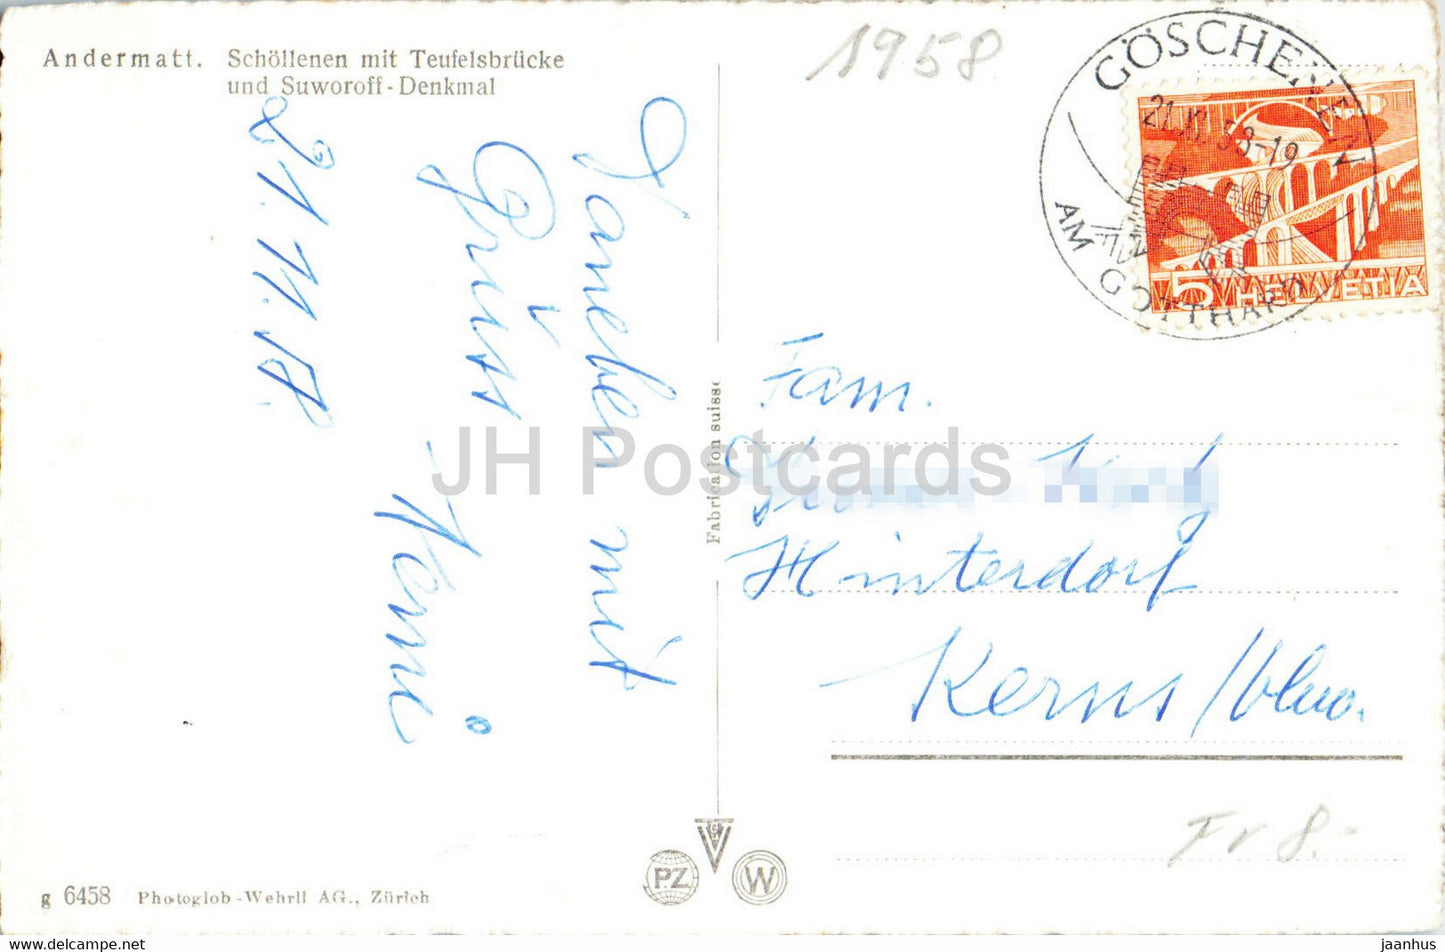 Andermatt - Schollenen mit Teufelsbrucke und Suworoff Denkmal - multiview - 1958 - old postcard - Switzerland - used